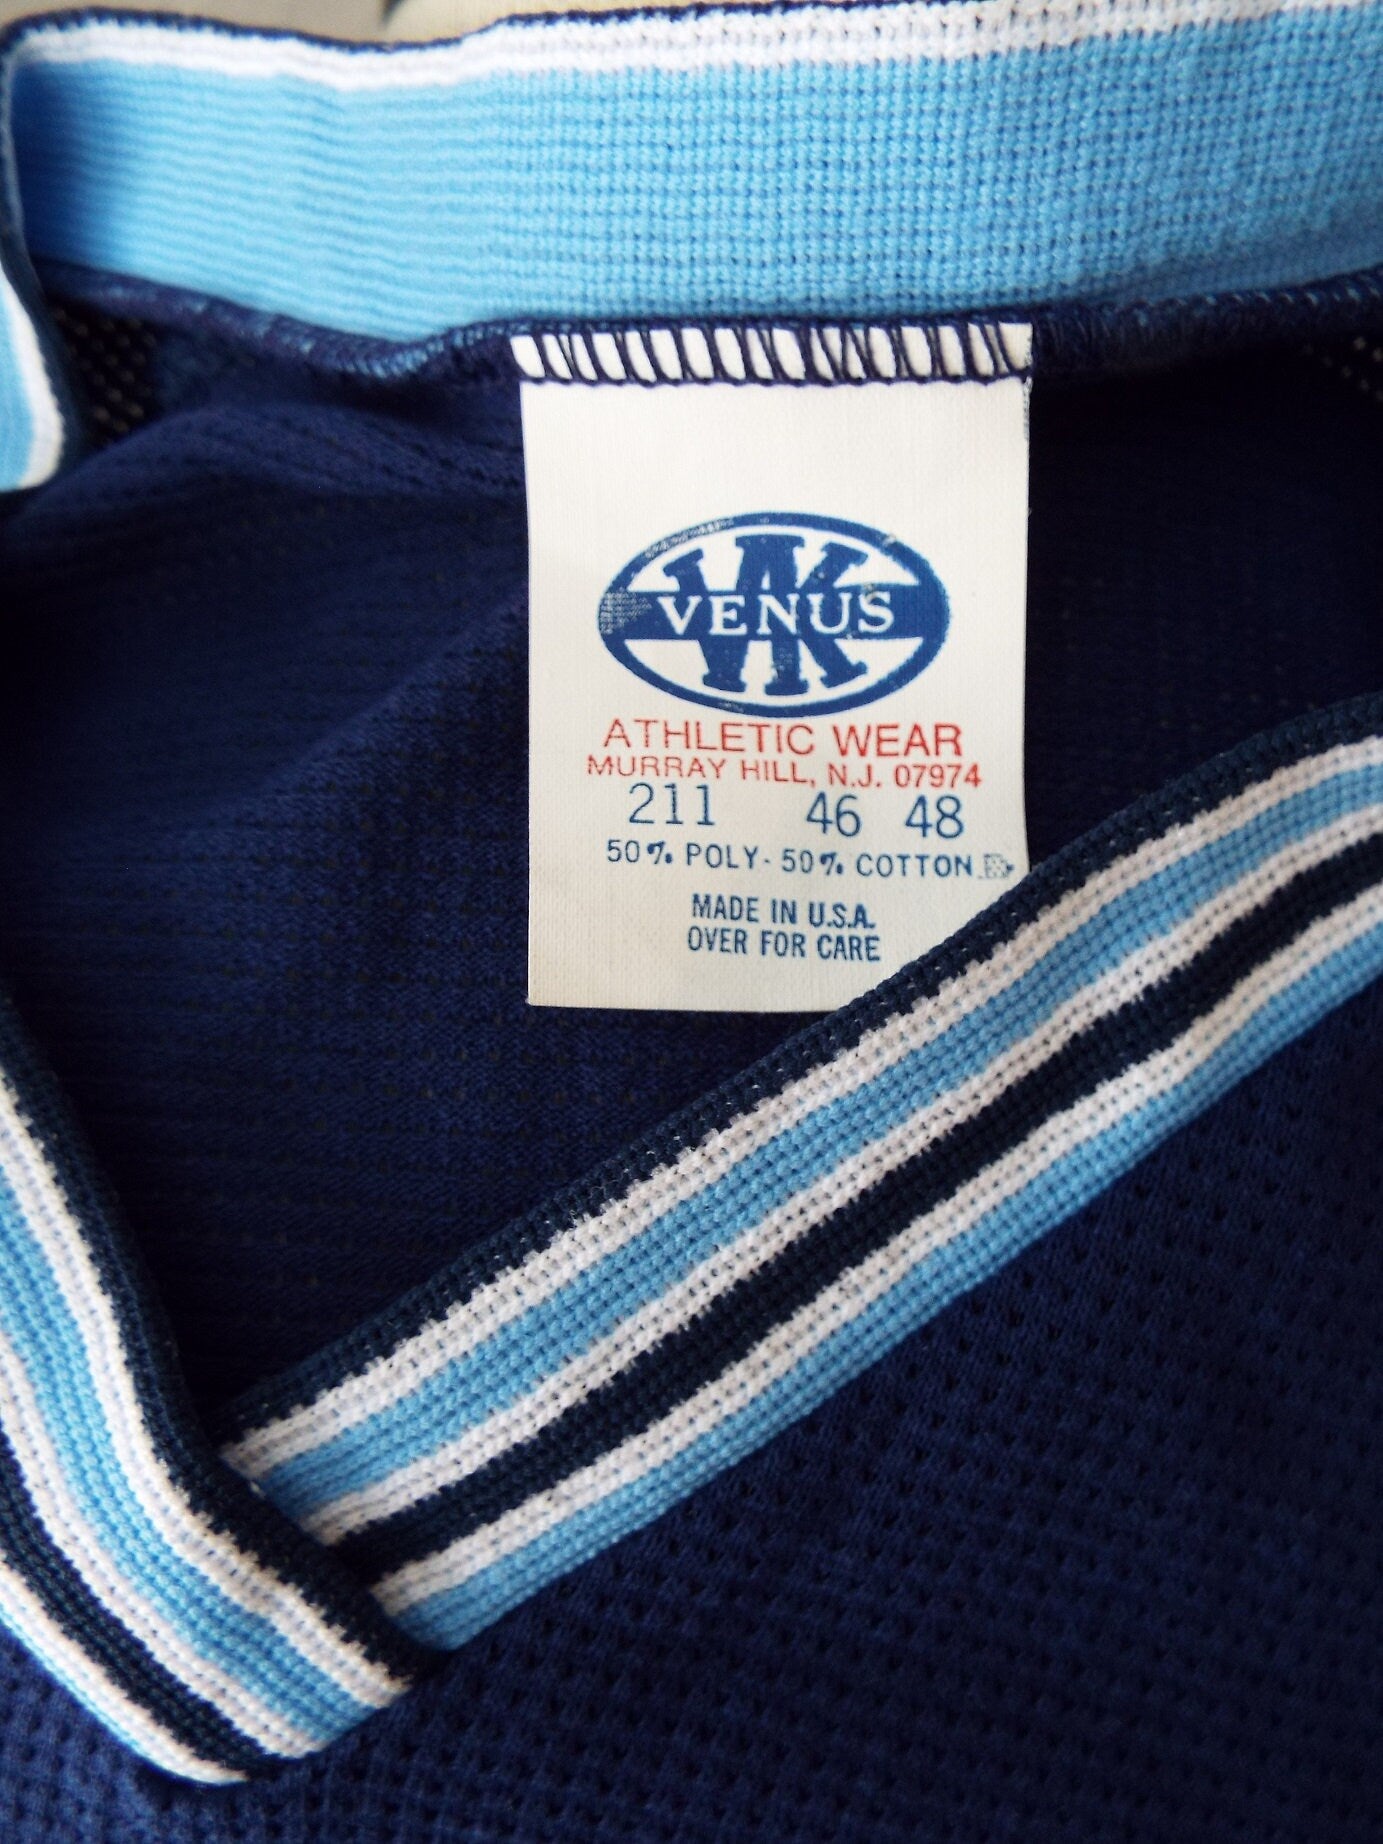 Vintage Short Sleeve Jersey by Venus Athletic Wear